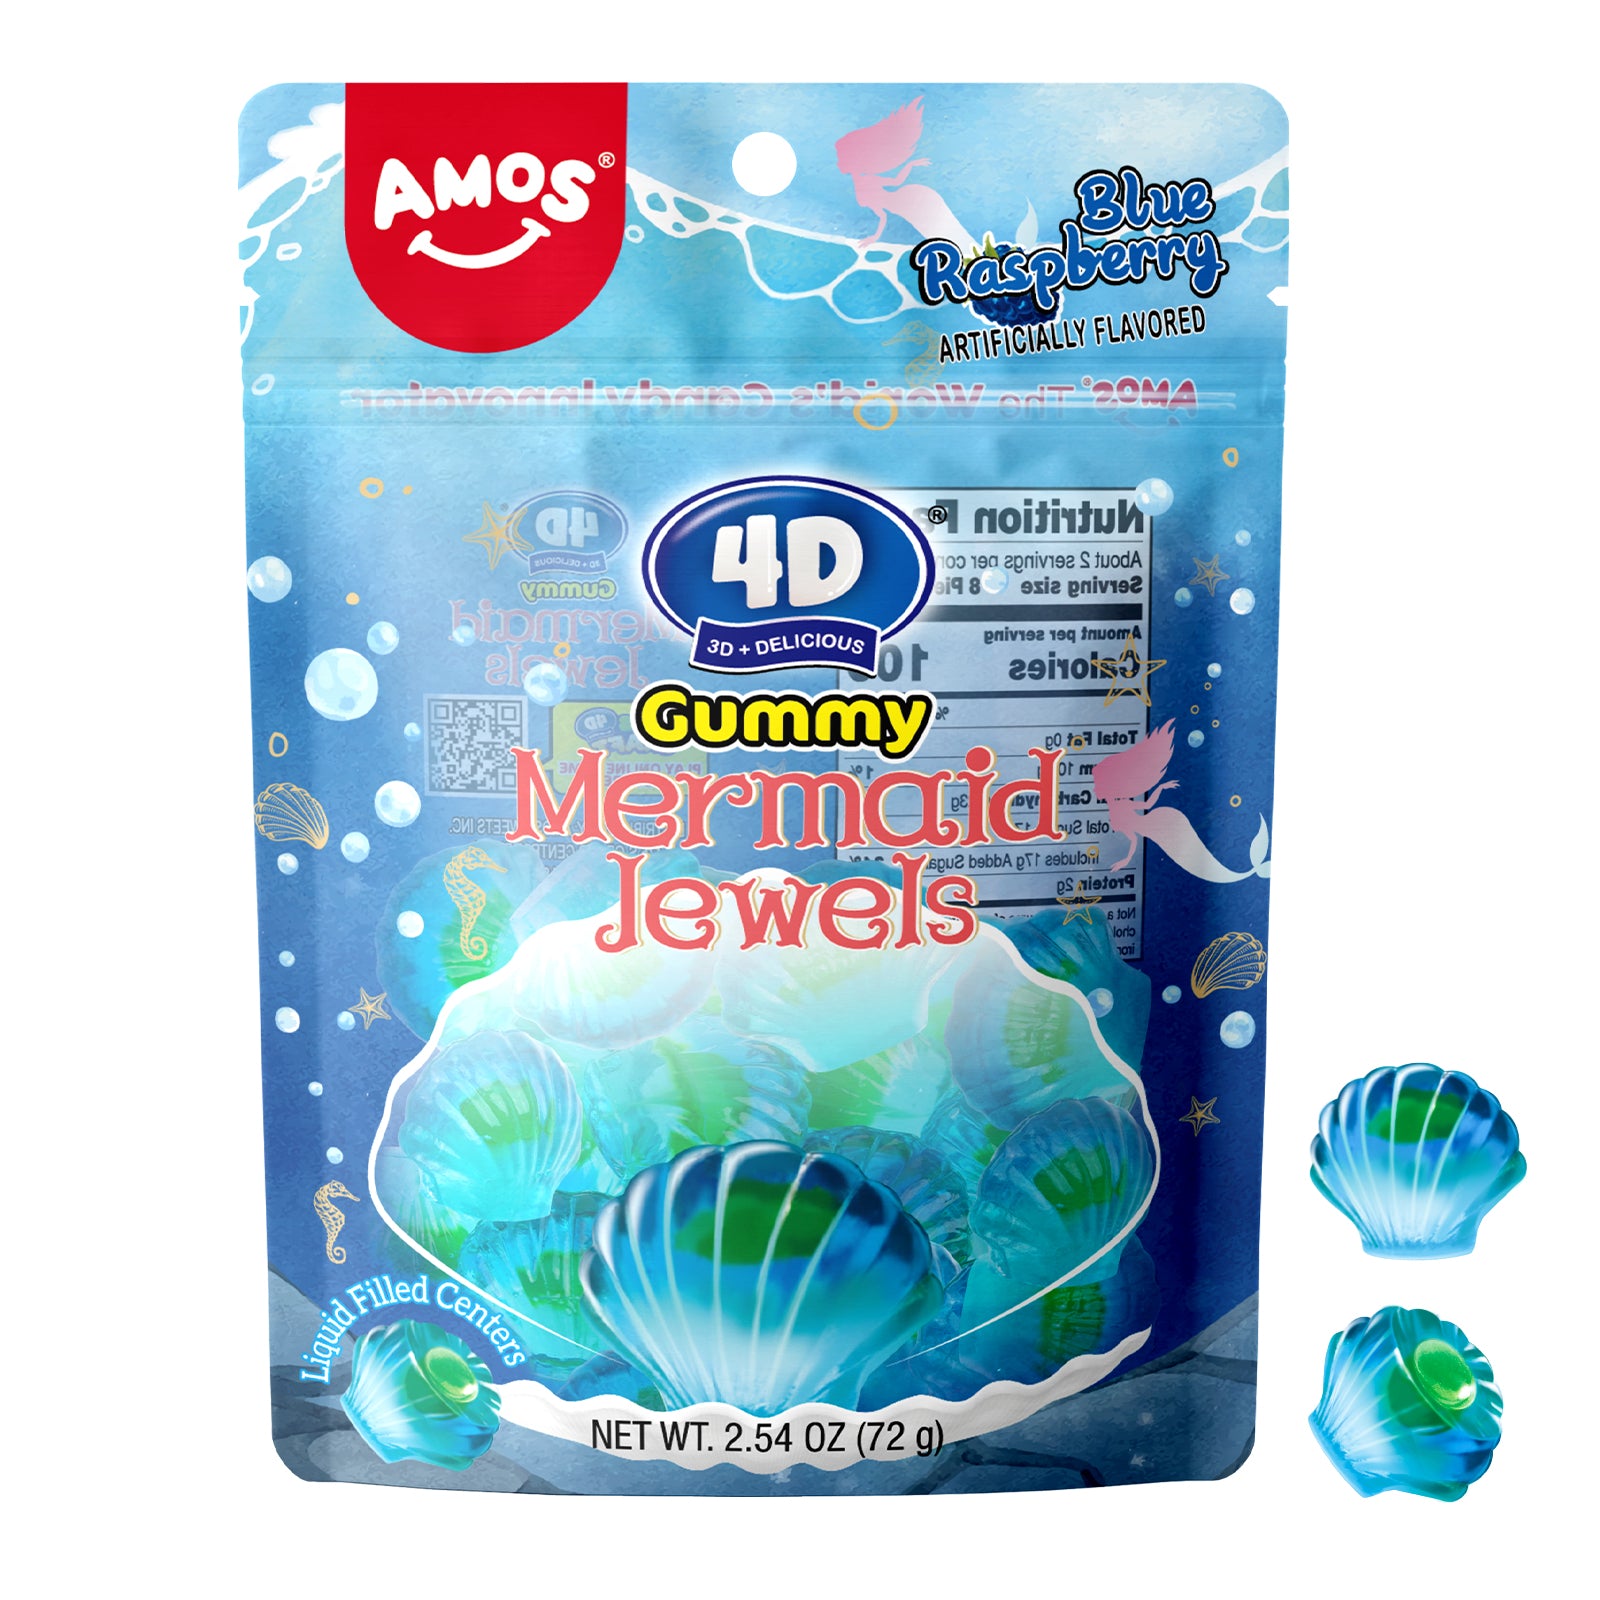 4D Ocean Gummy - Mermaid Jewels